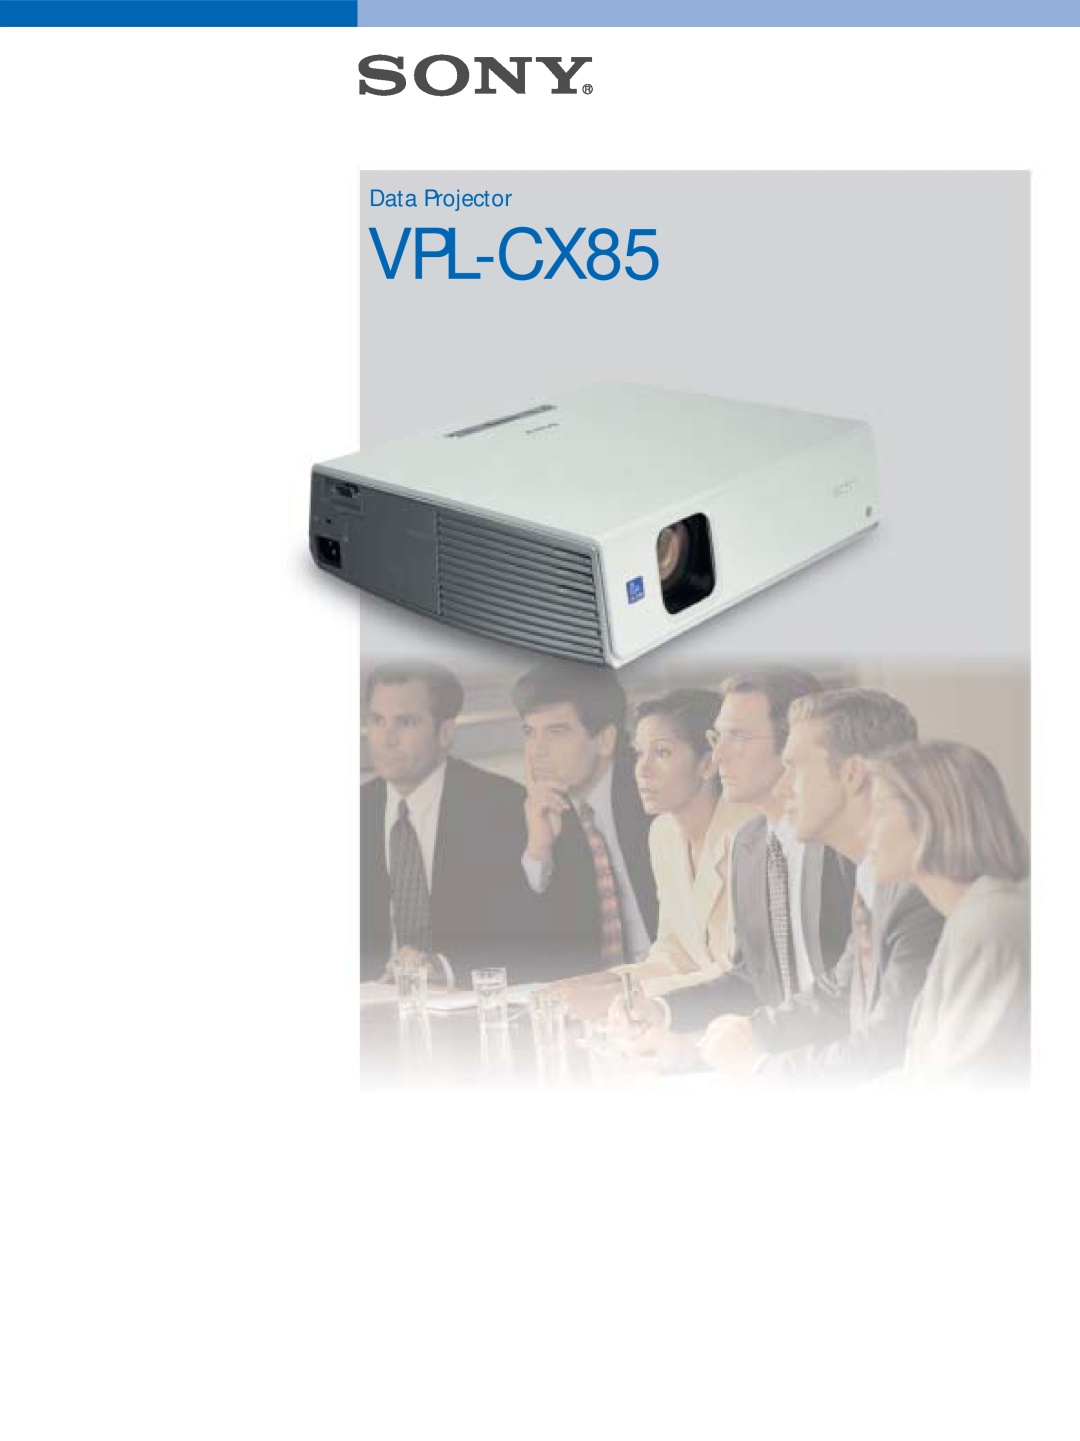 Sony VPL-CX85 manual Data Projector 